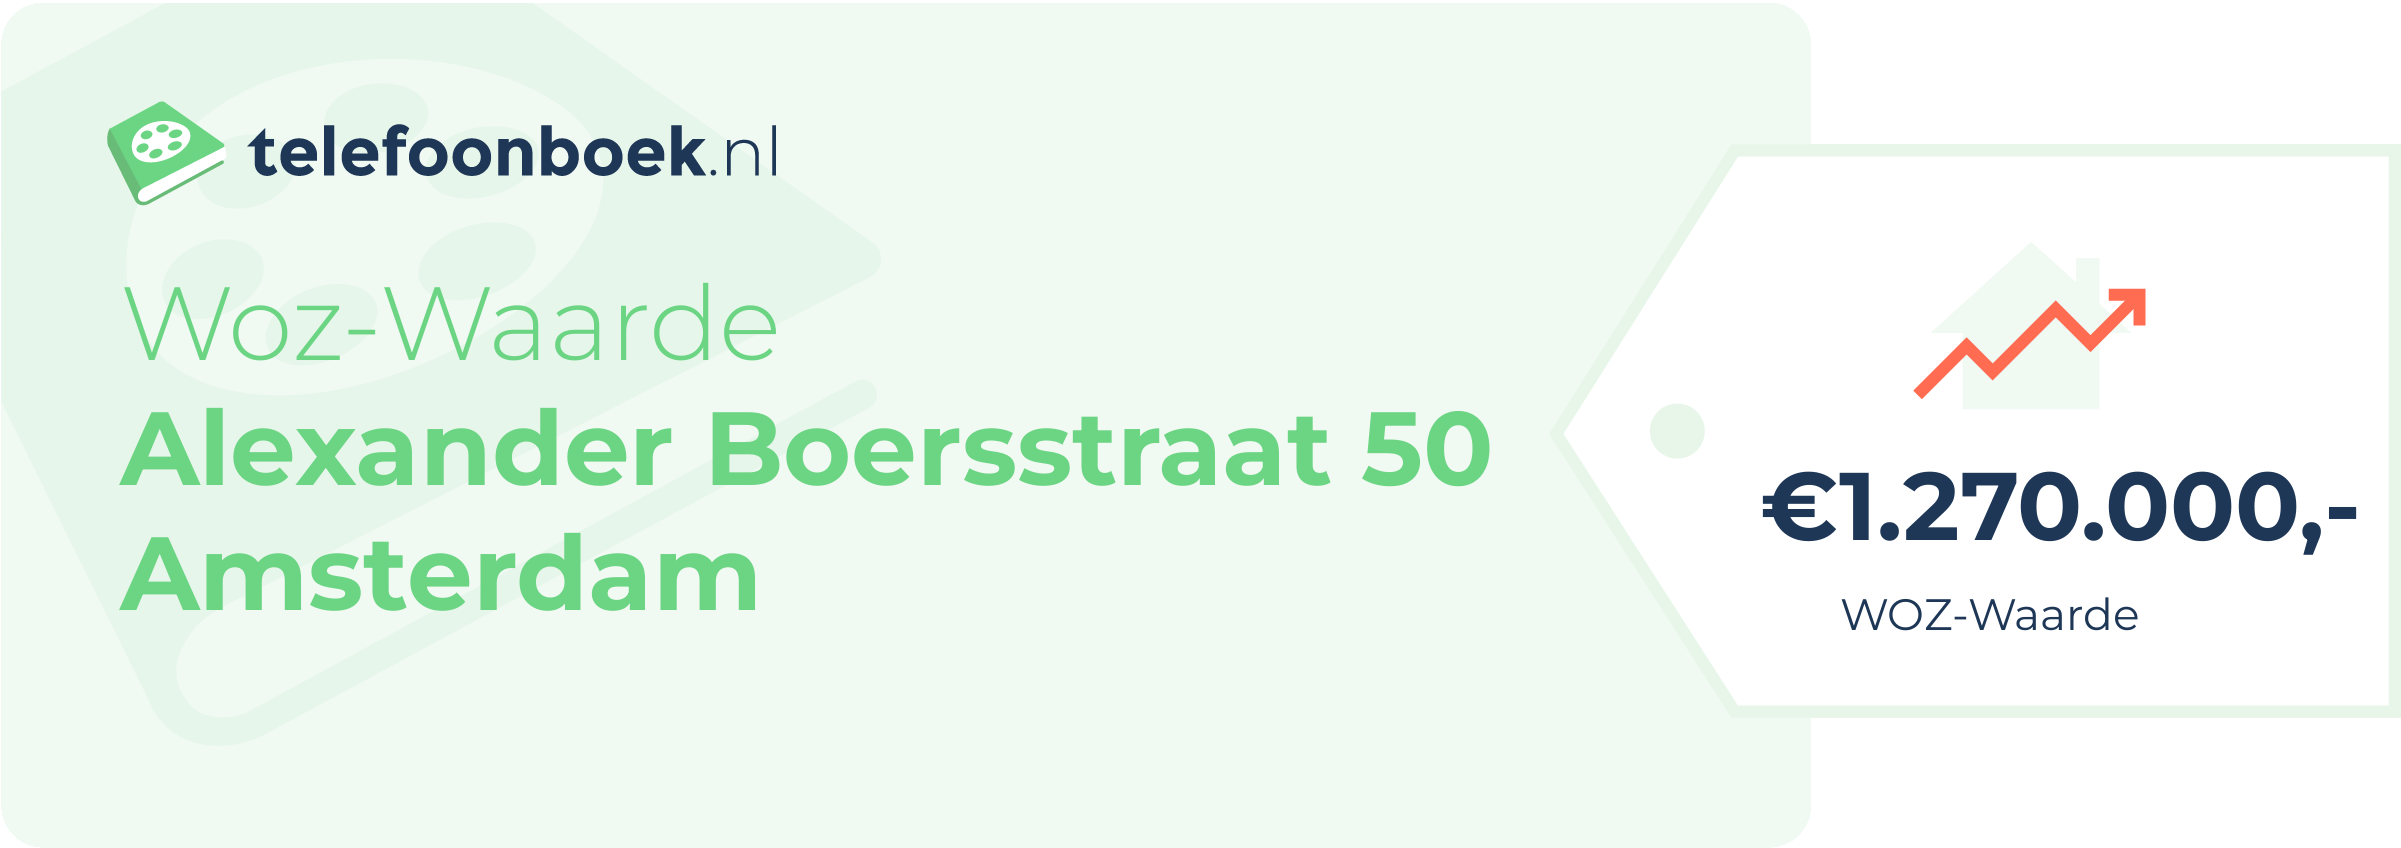 WOZ-waarde Alexander Boersstraat 50 Amsterdam